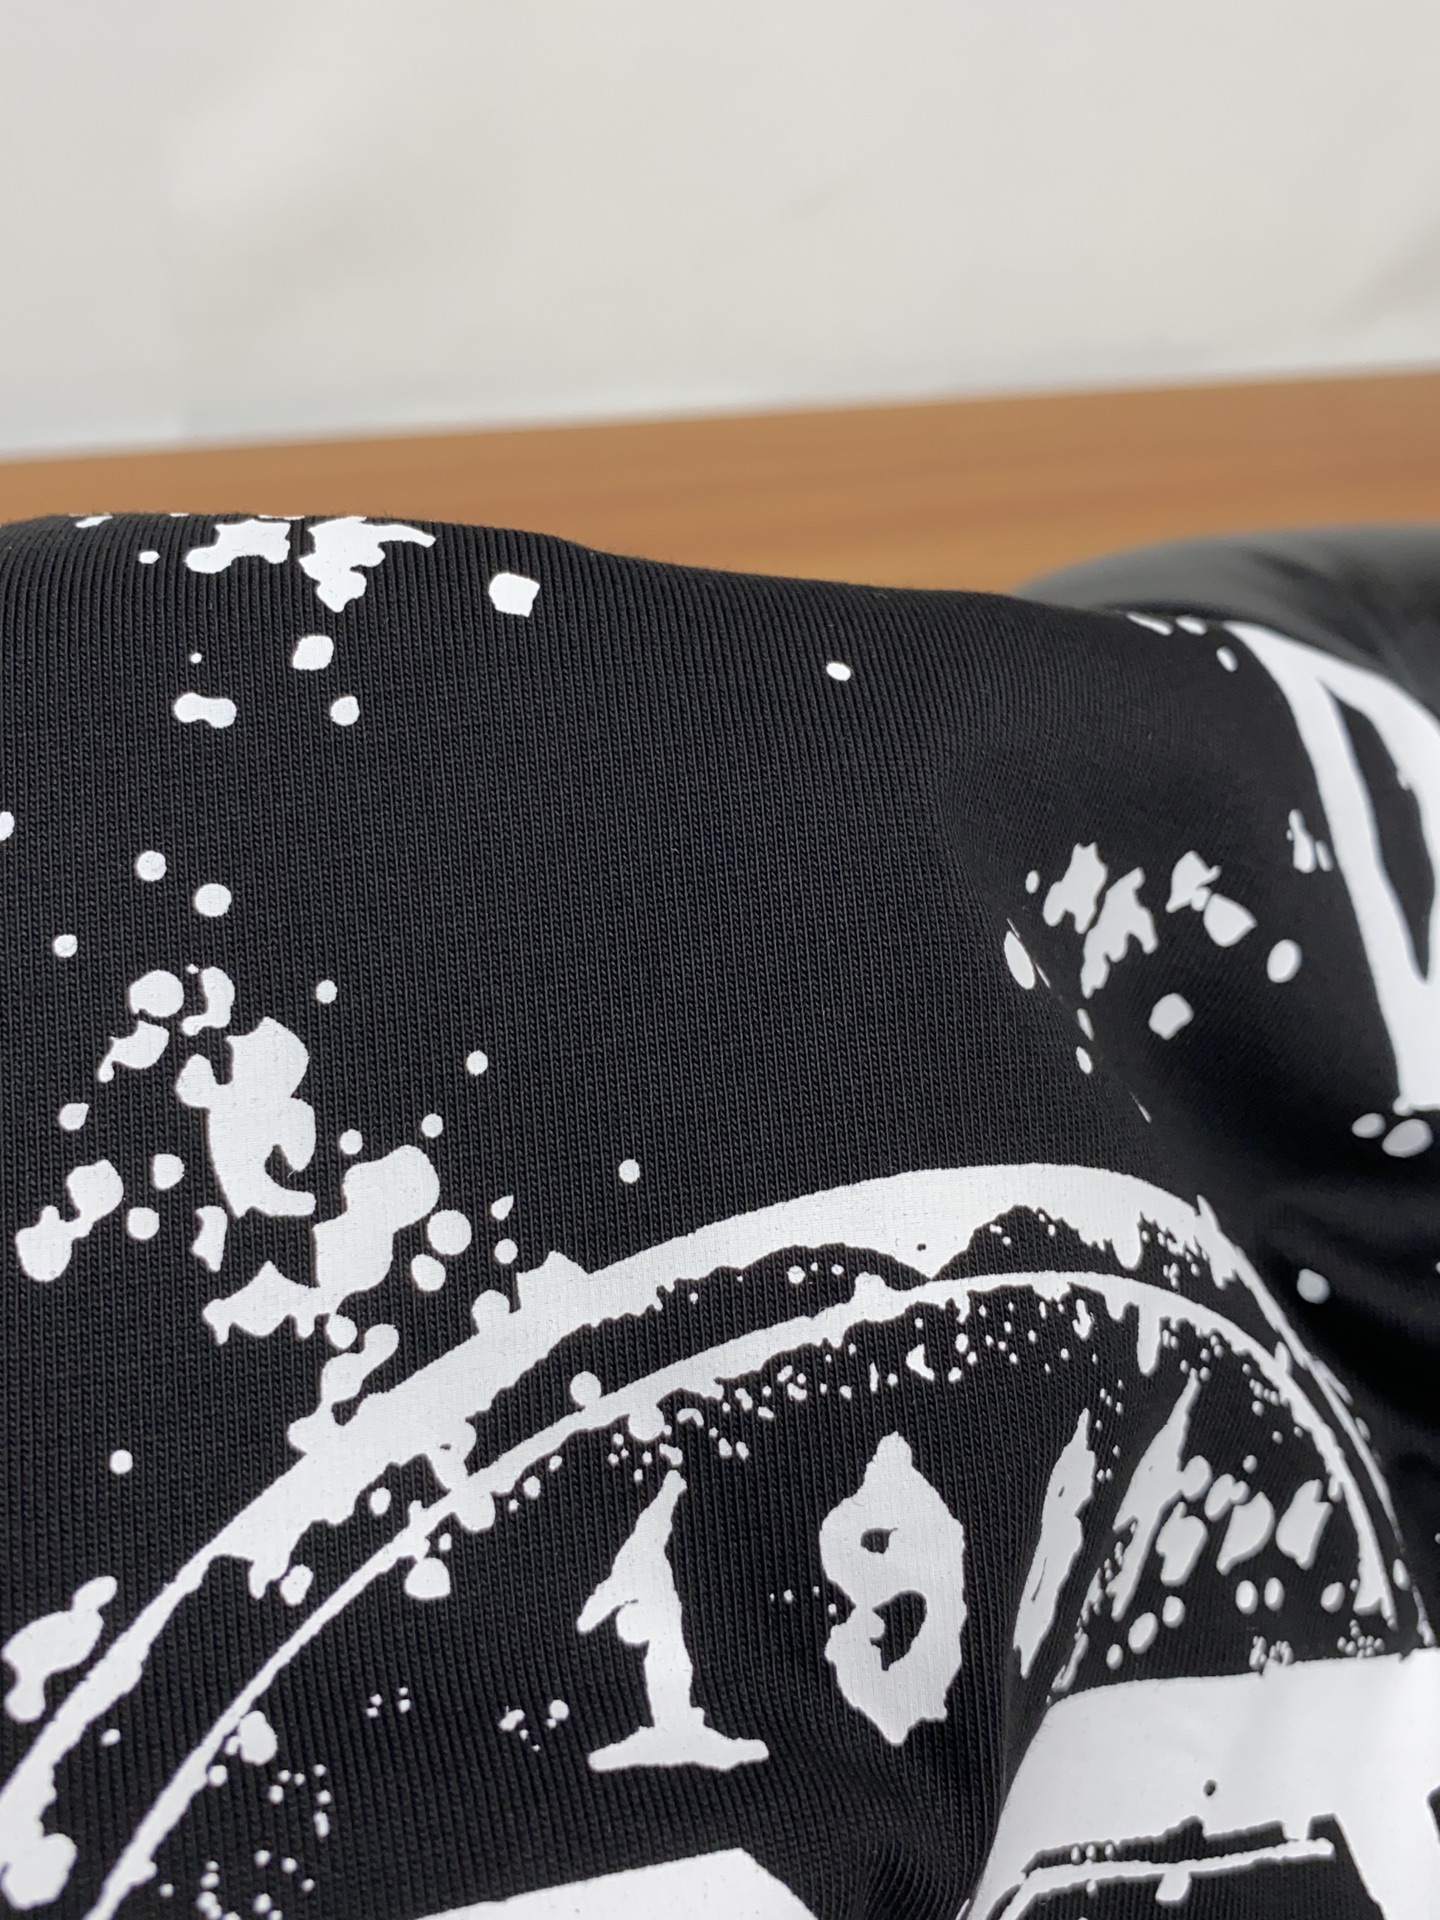 DG合身版型M-3xL24春夏早春新款短袖T恤顶级制作工艺进口纯棉面料手感细腻每个字母饱满立体清晰,一眼